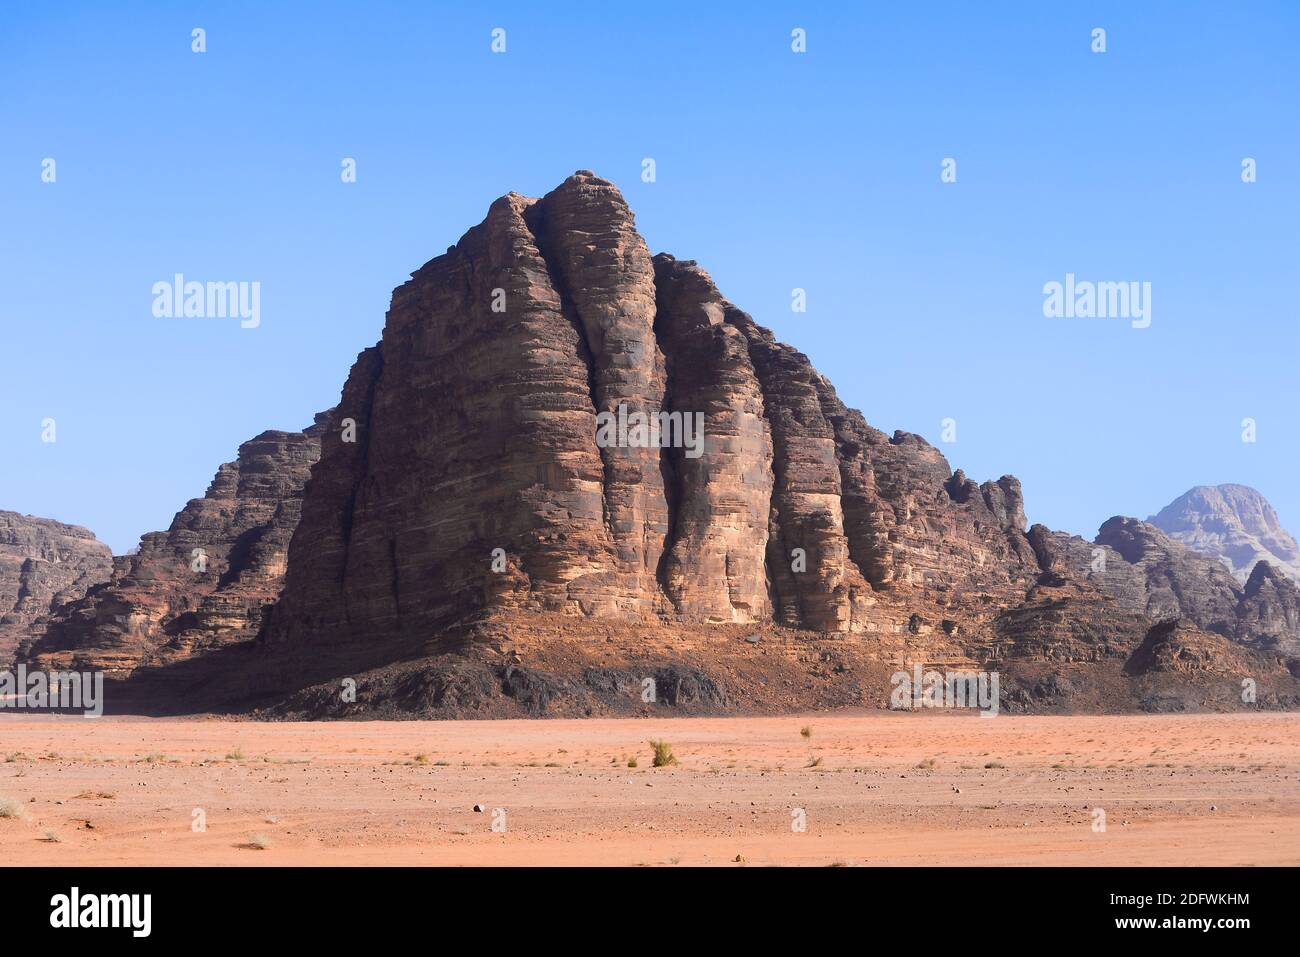 Los siete pilares de la Sabiduría en Wadi Rum, Jordania. Valle de la Luna formación de roca nombrada por la famosa película épica Lawrence de Arabia. Wadi al-Qamar. Foto de stock